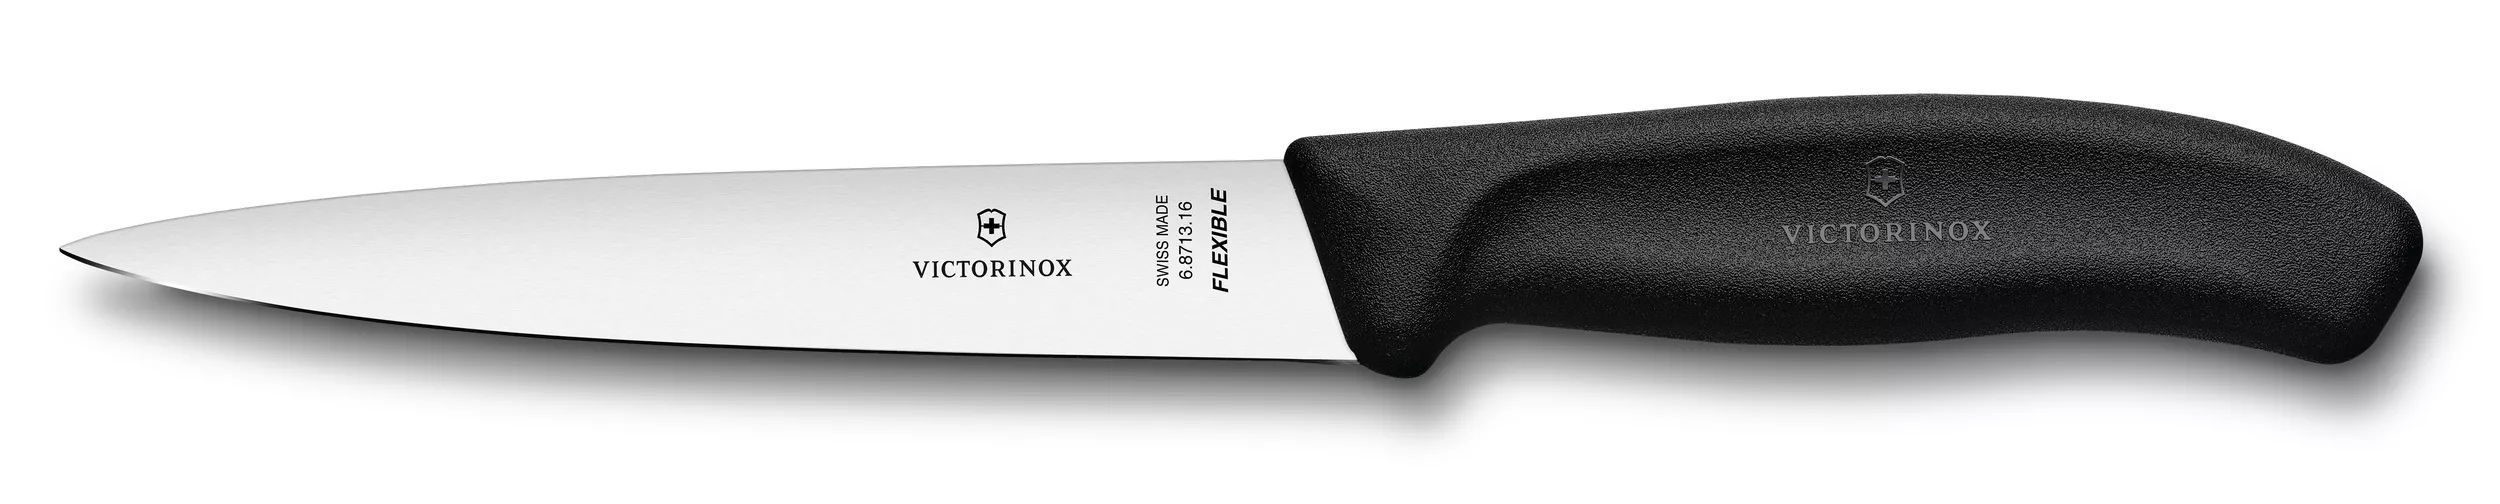 Victorinox Swiss Classic Filleting Knife in black - 6.8713.16B